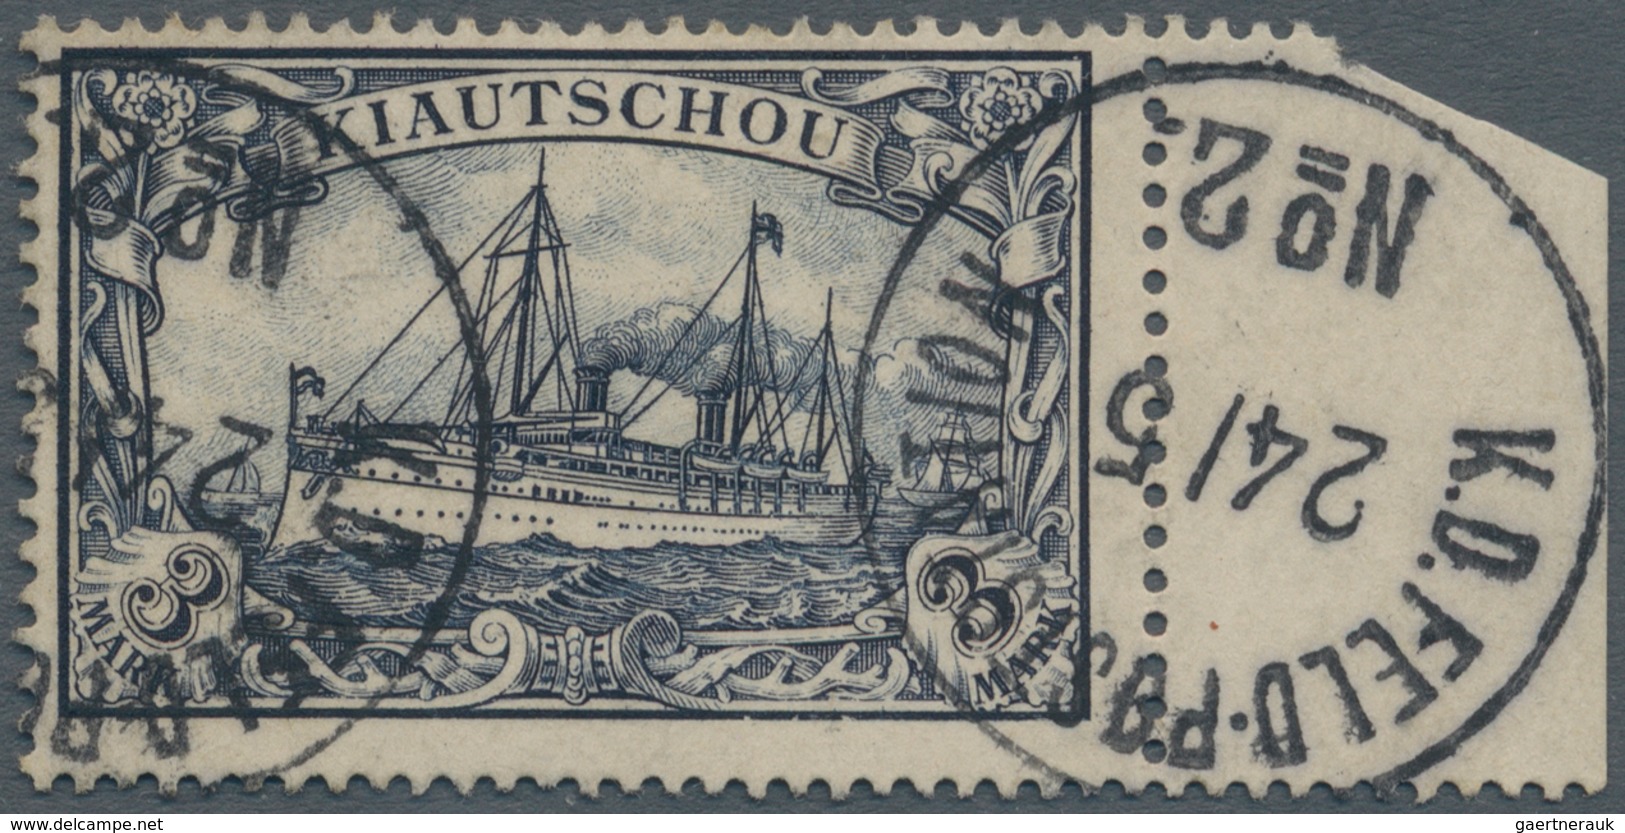 Deutsche Post In China: 1900, Petschili Kiautschou 3 Mark Schiffszeichnung Vom Rechten Bogenrand, Kl - Deutsche Post In China